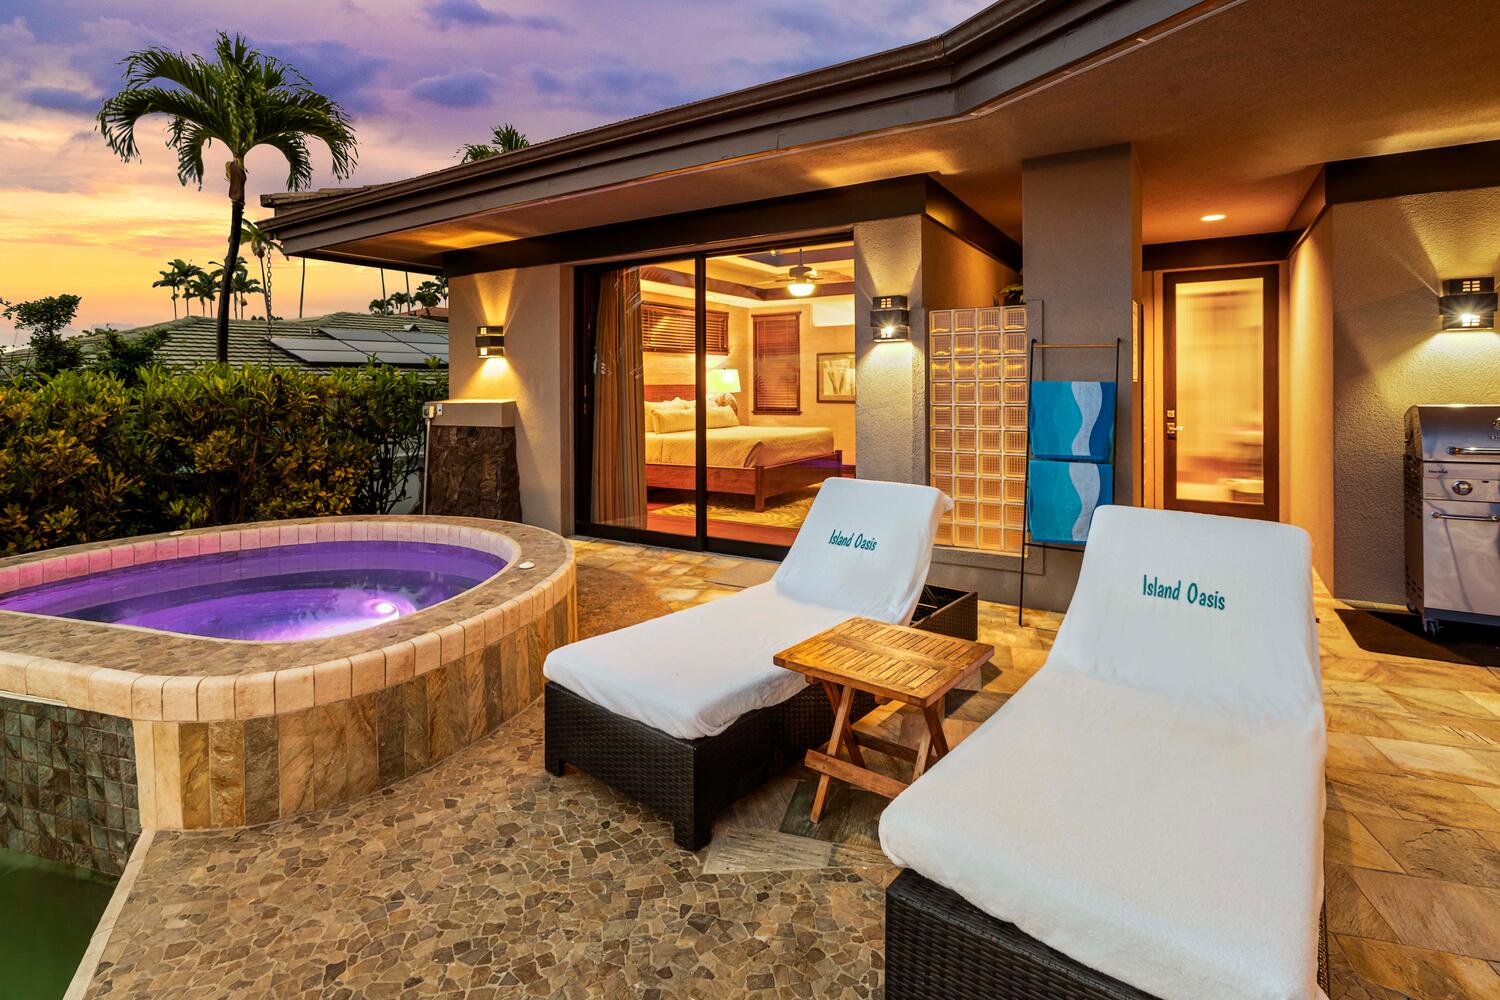 Kailua Kona Vacation Rentals, Island Oasis - Lounge by the spa pool